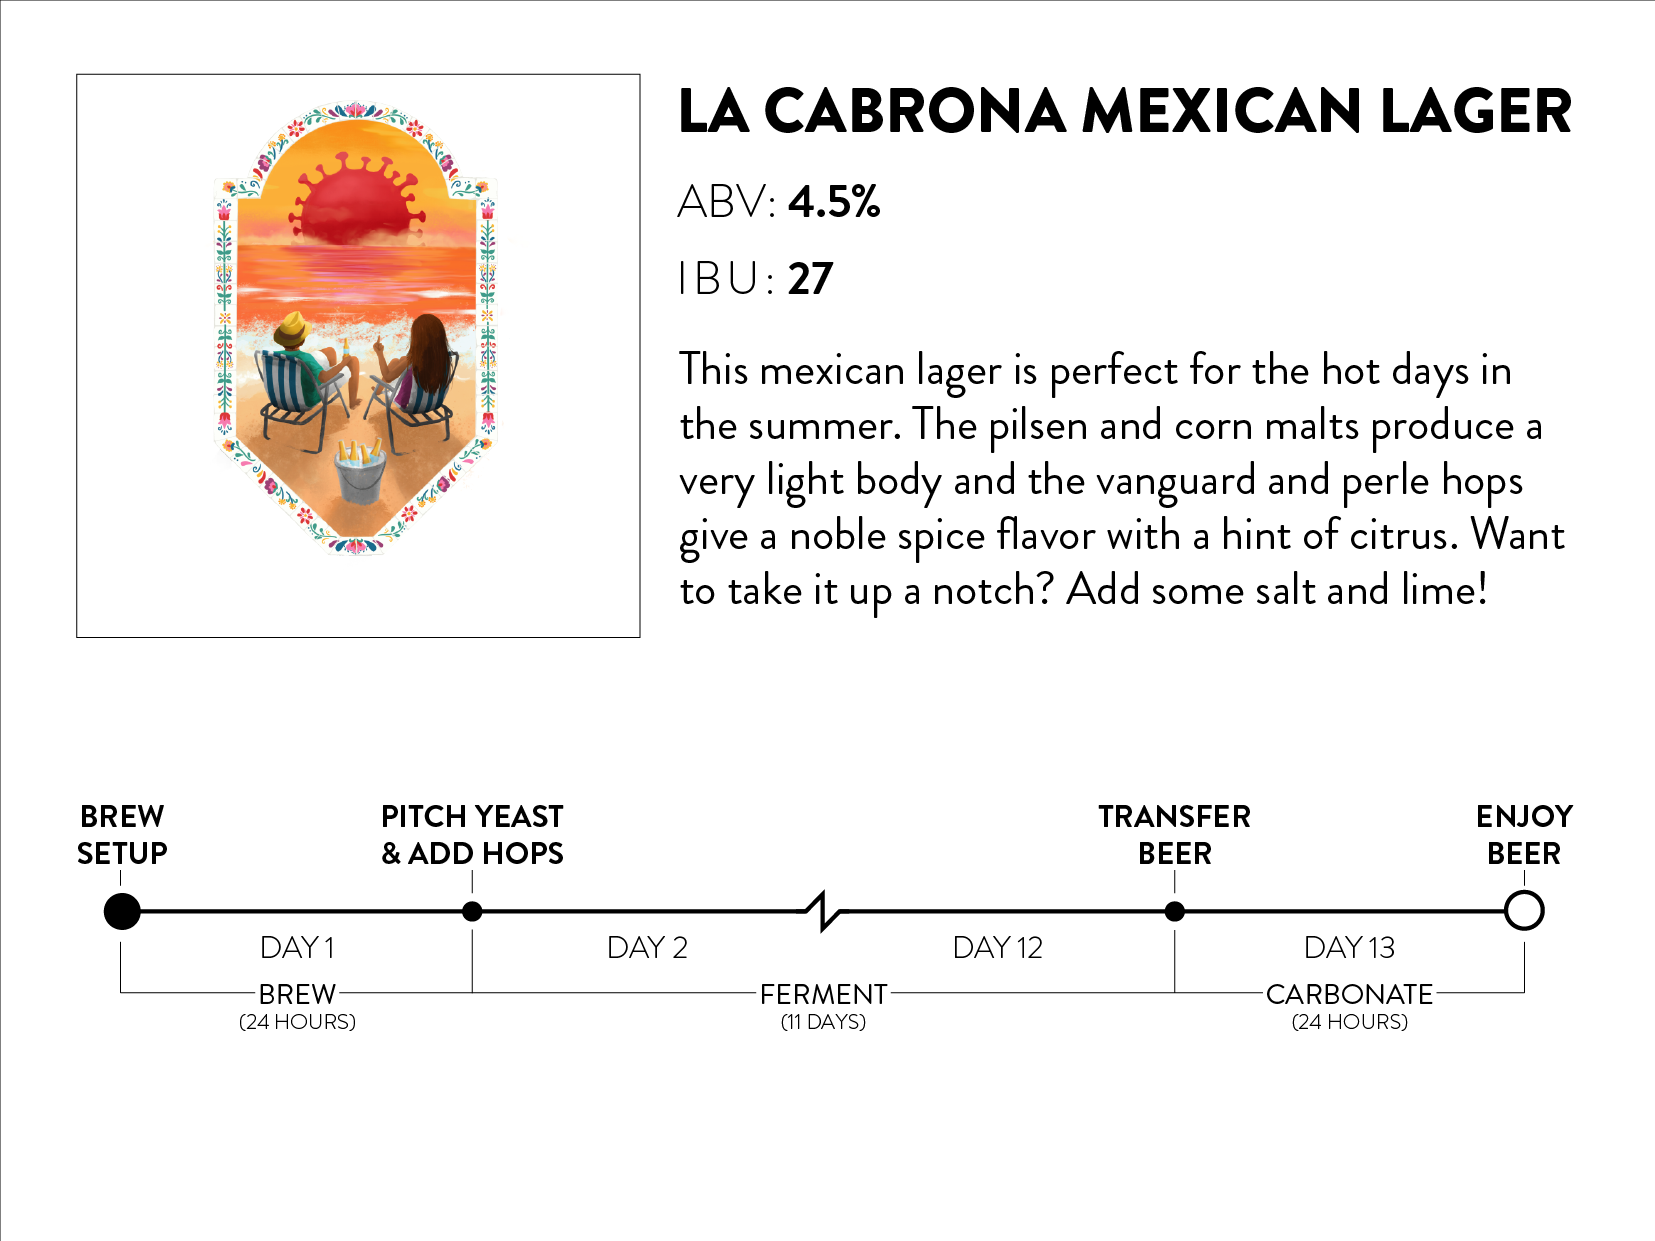 La Cabrona Mexican Lager